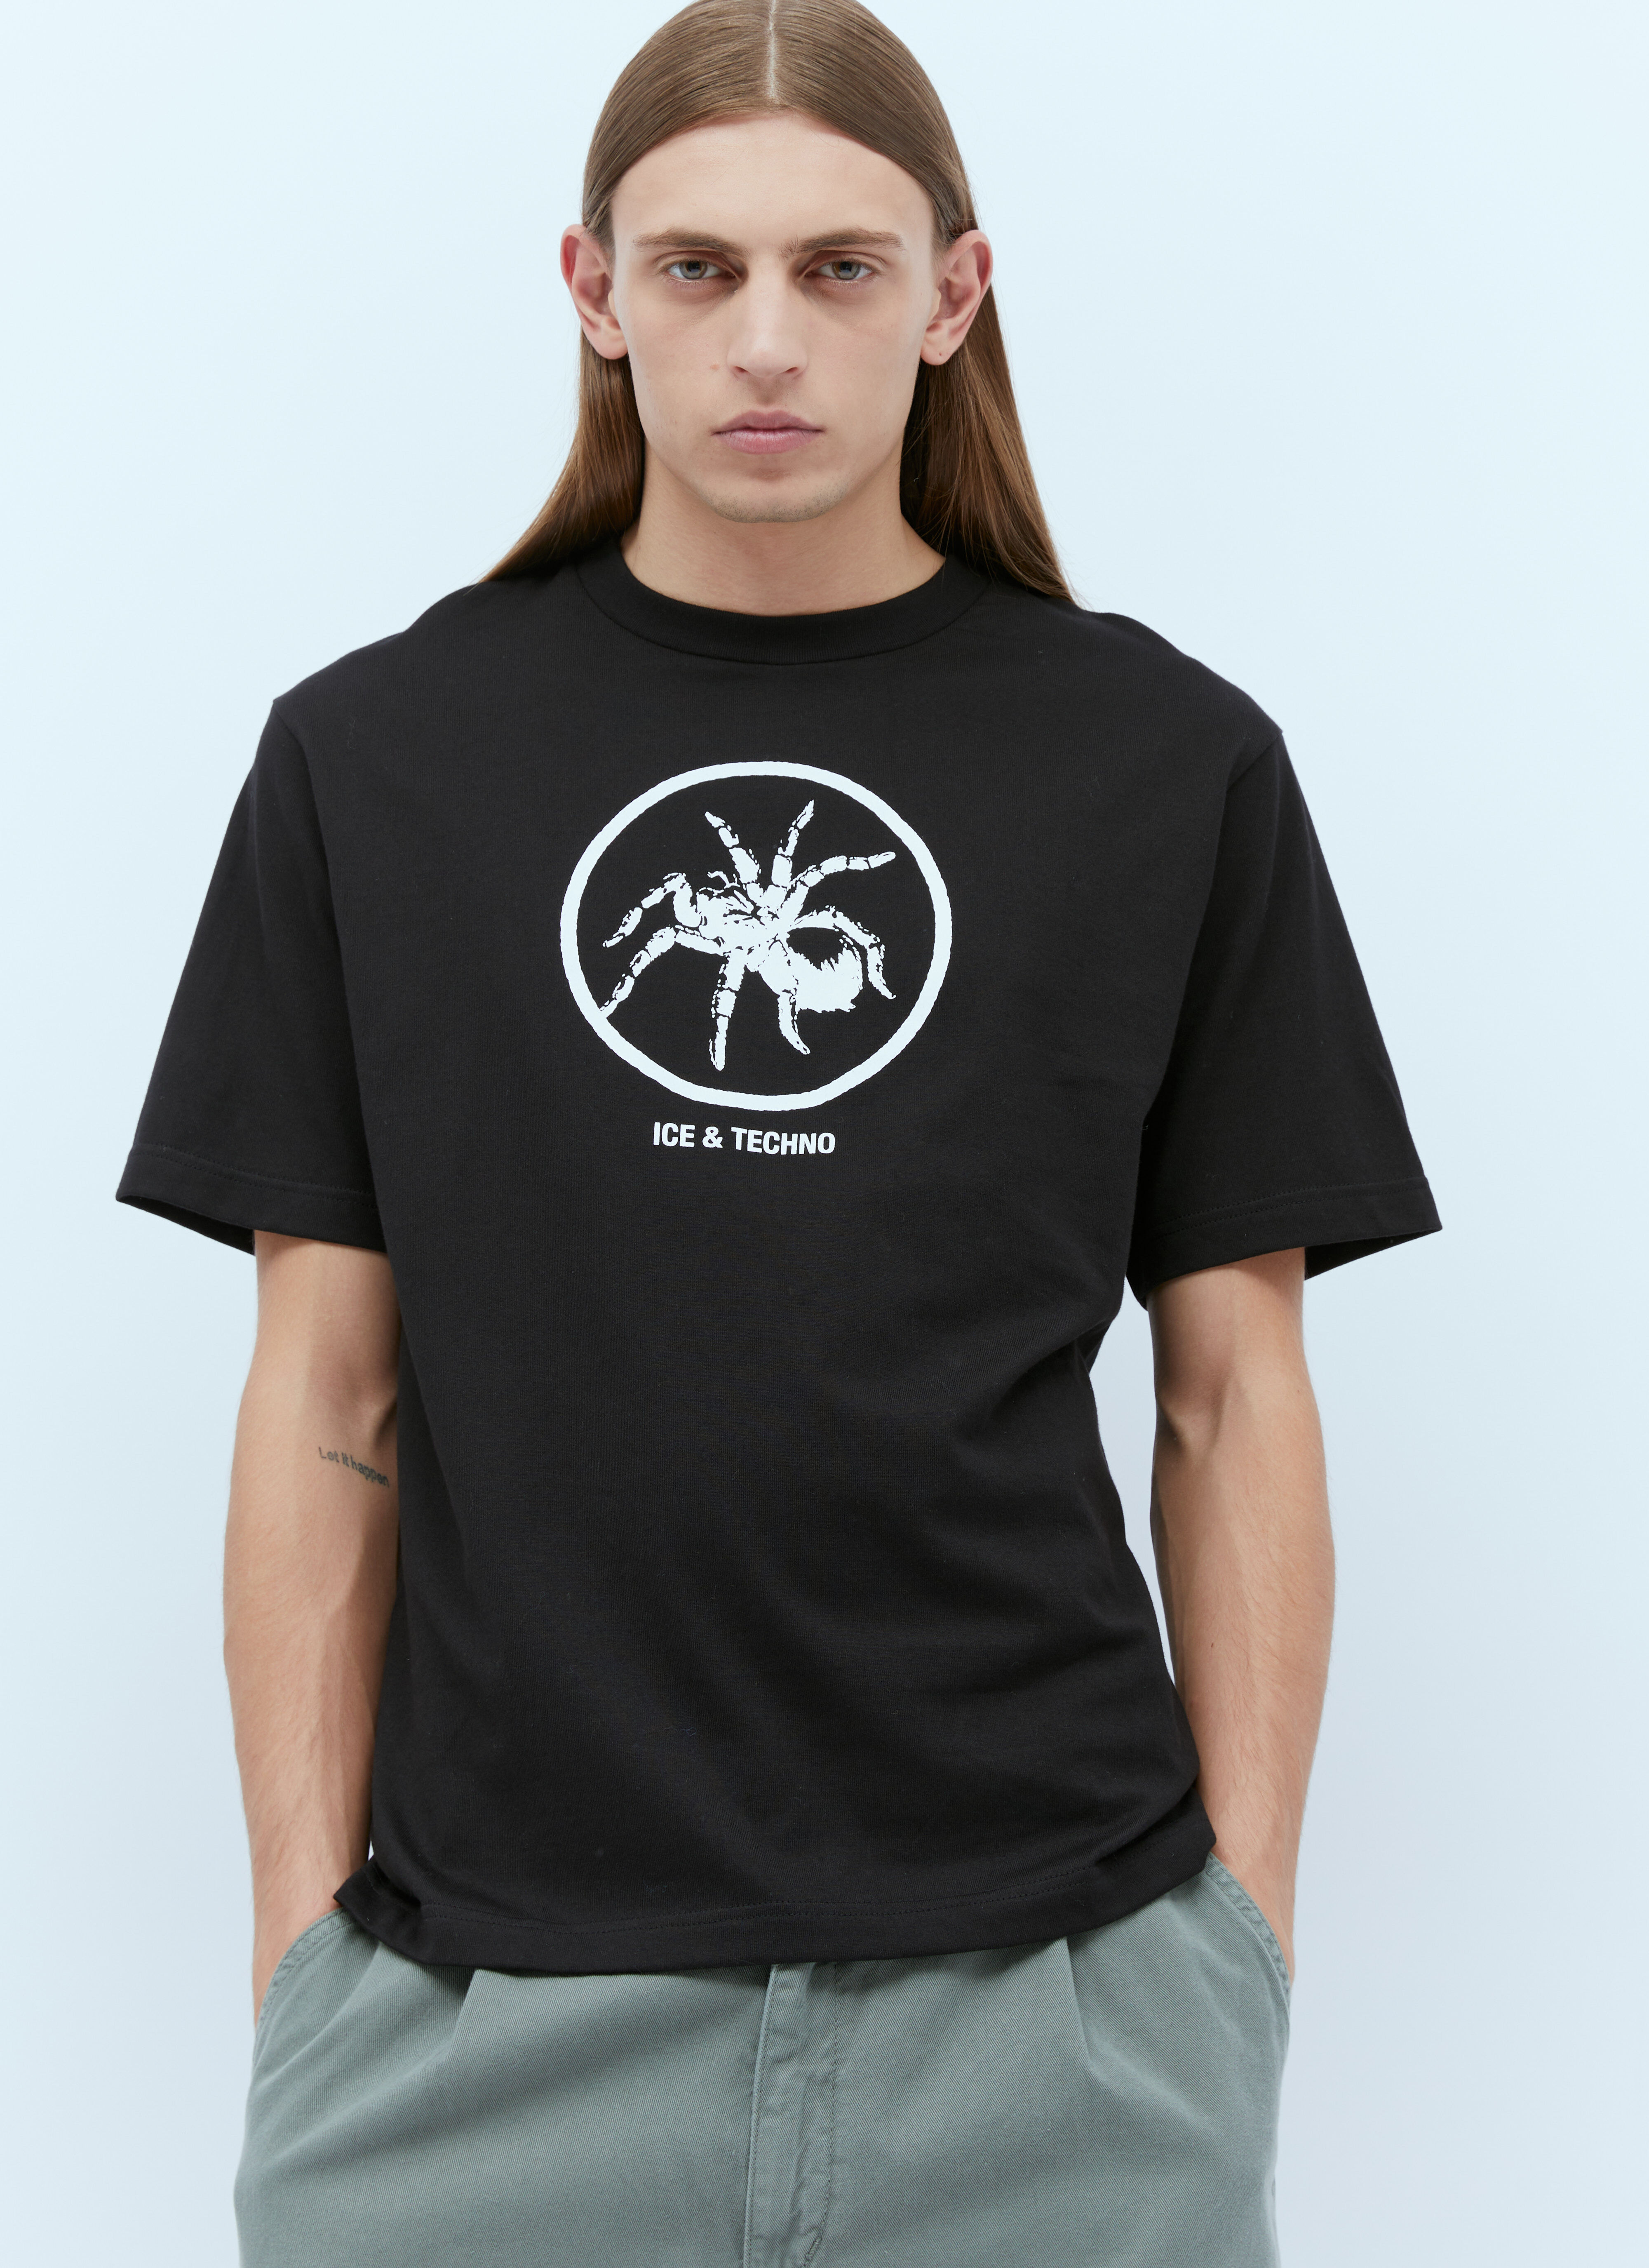 HYSTERIC GLAMOUR x CIRCLE HERITAGE スパイダーTシャツ ブラック hgc0155002